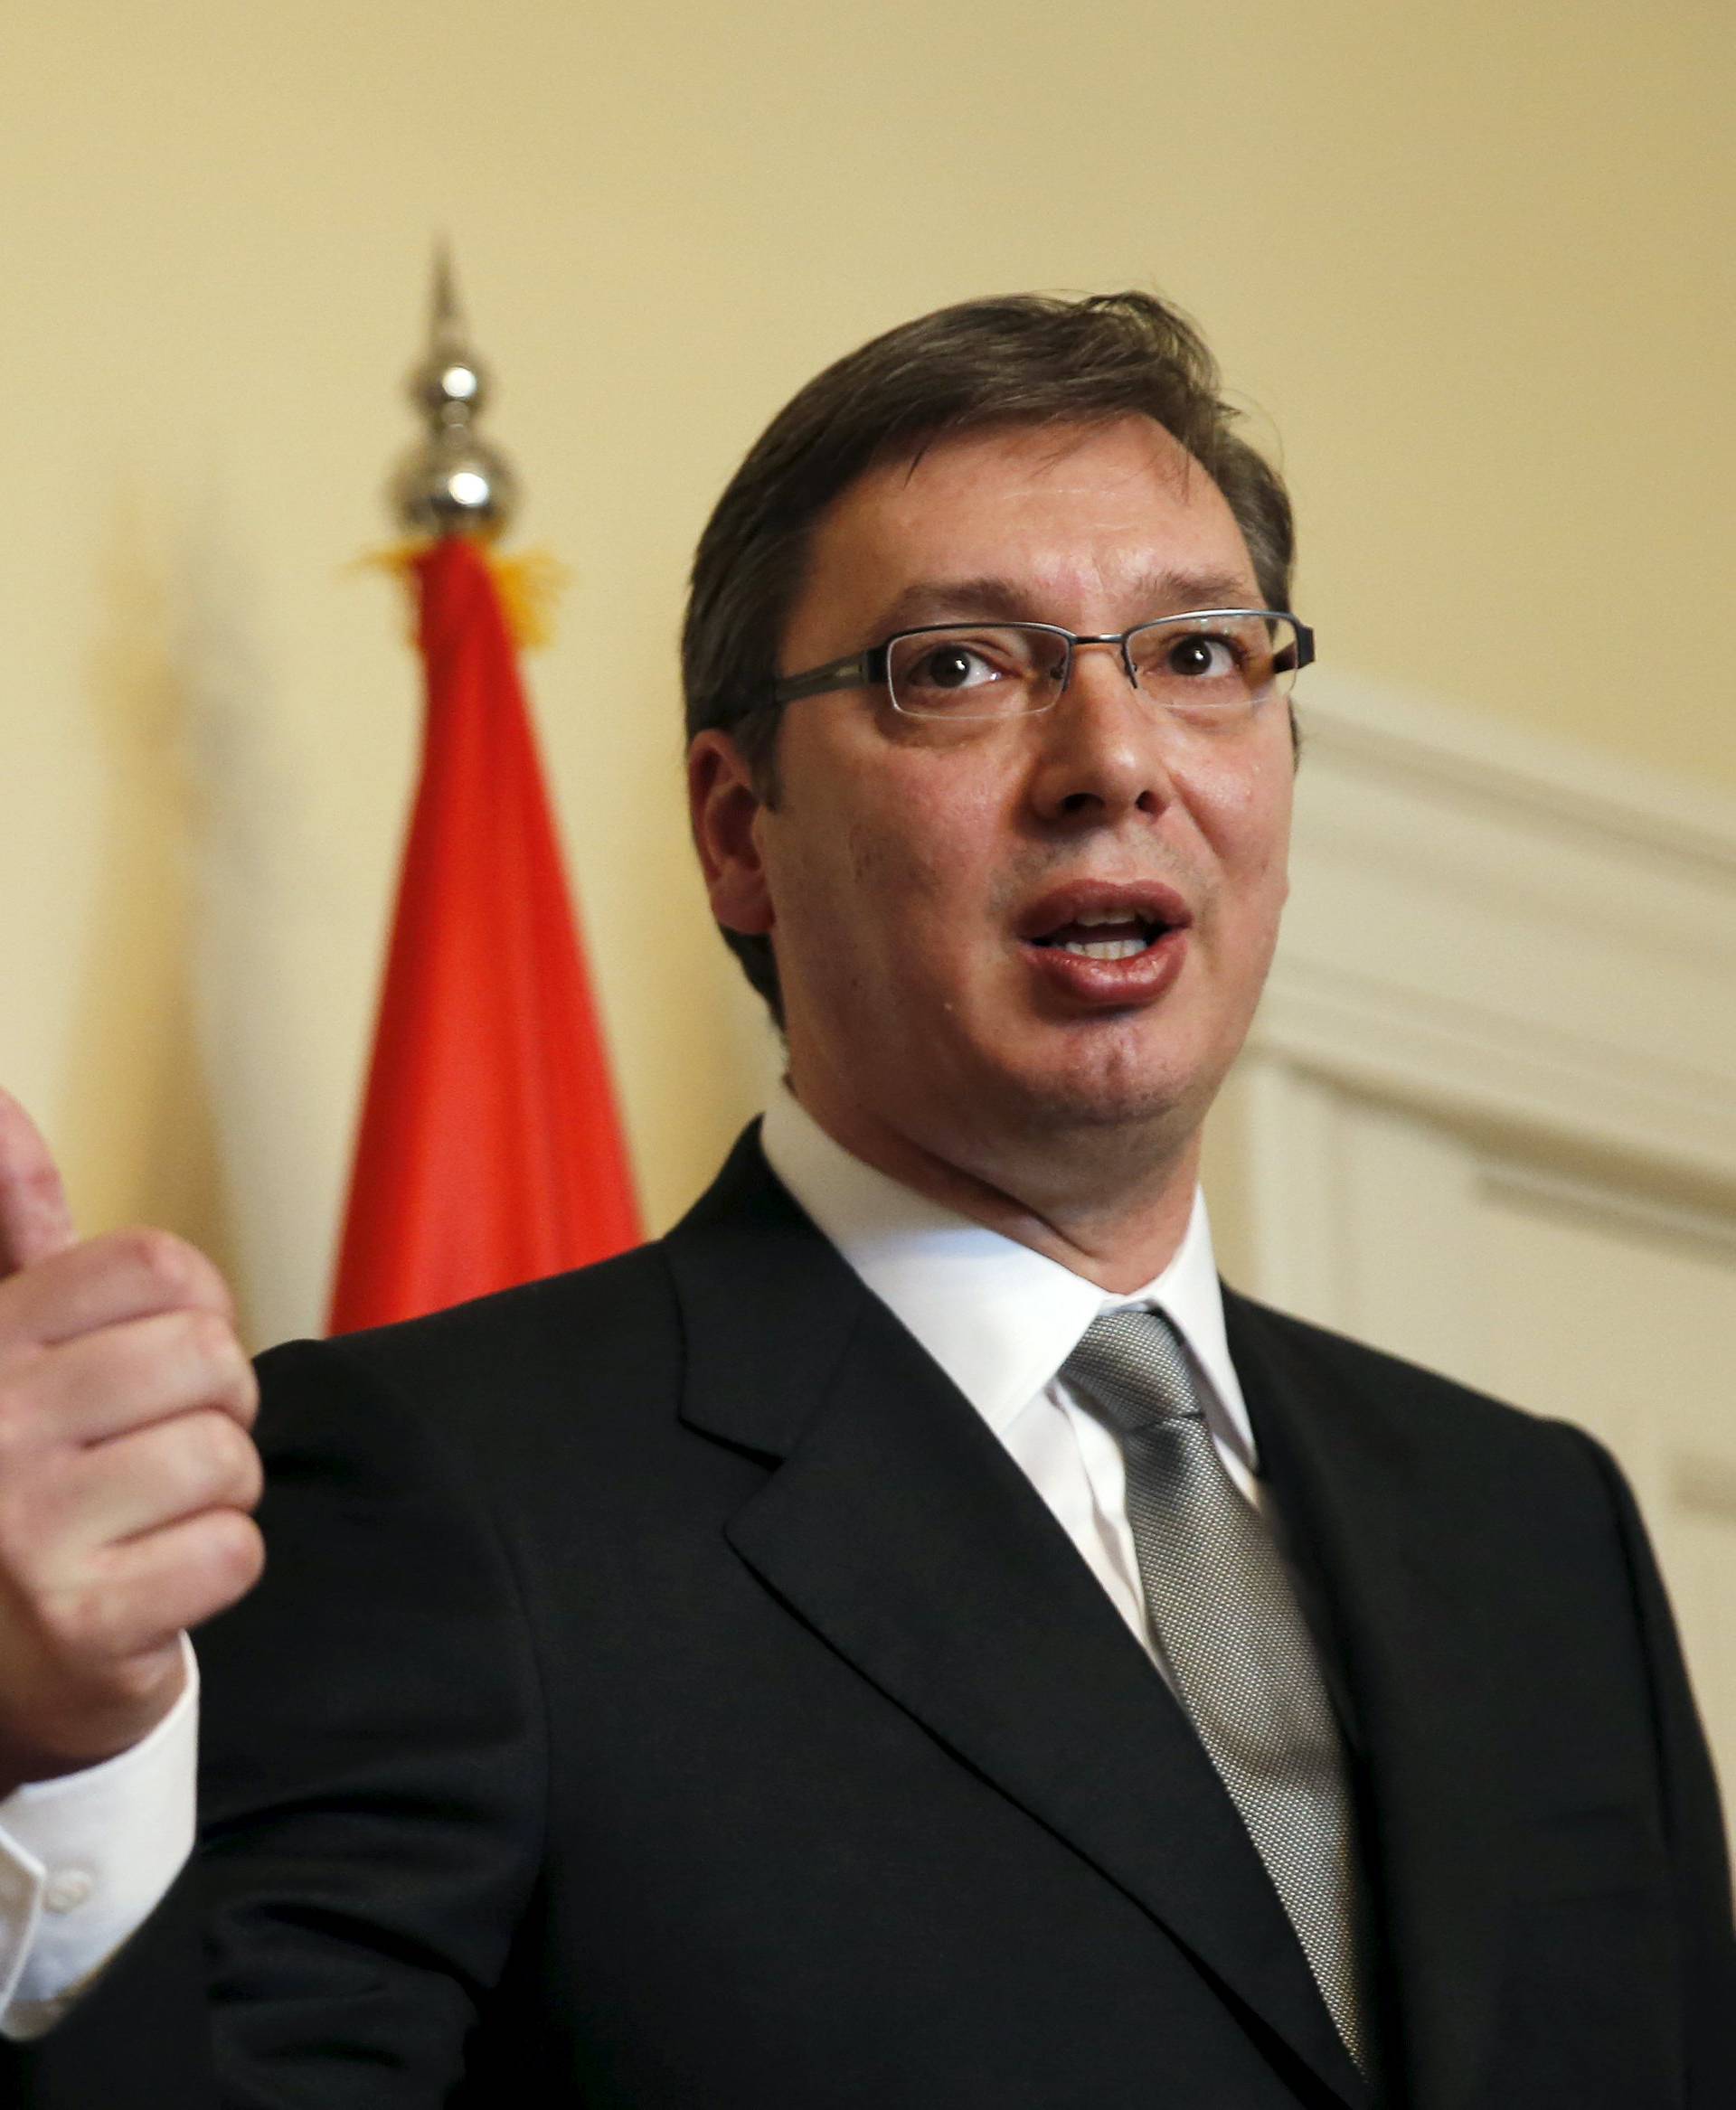 Vučić: 'Moramo spriječiti sučeljavanje srpskih barjaka'